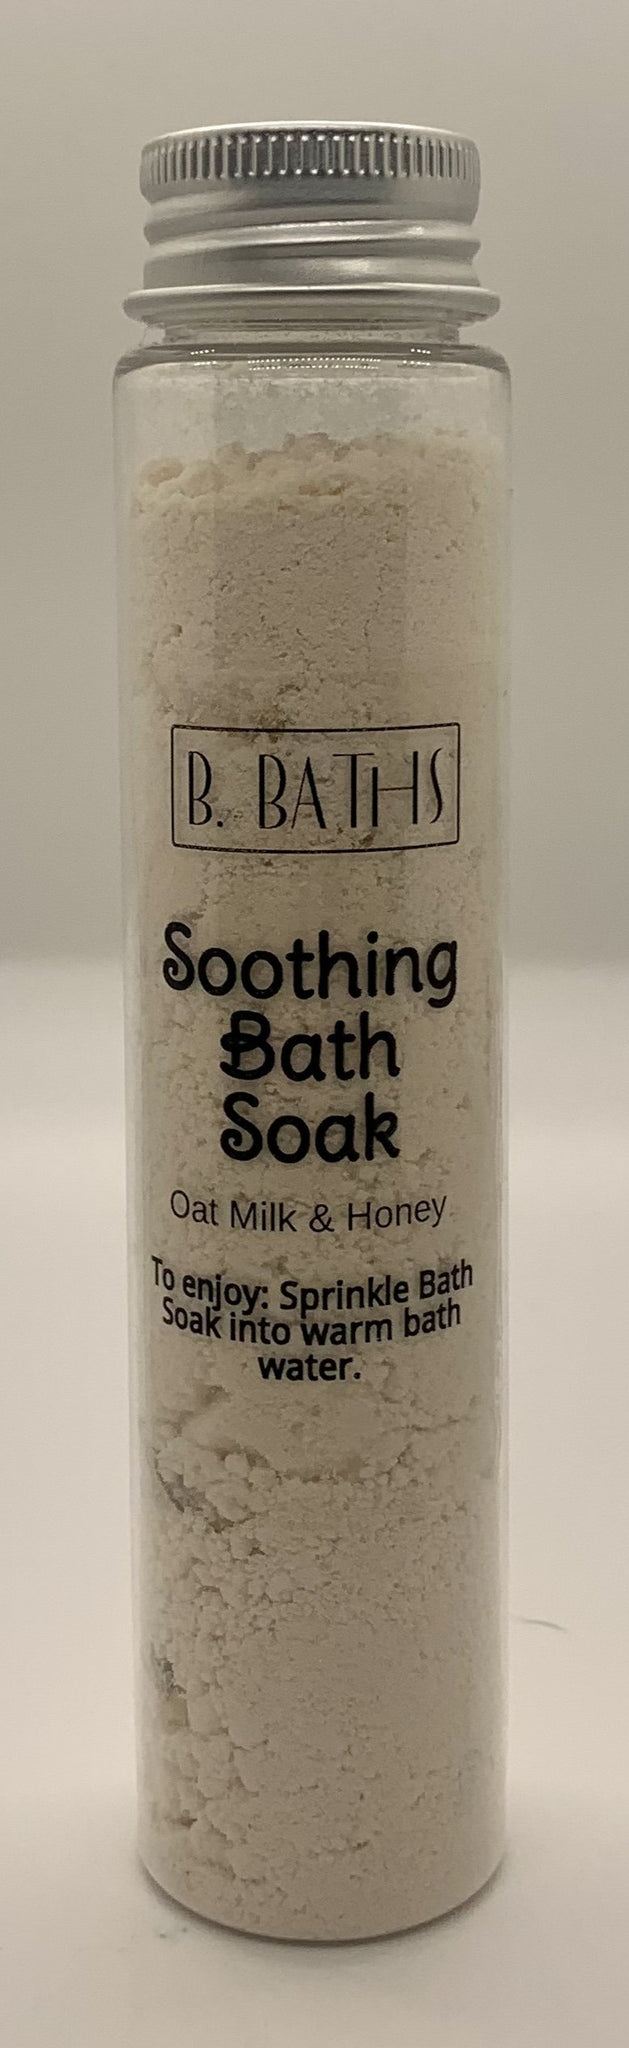 Soothing Bath Soak